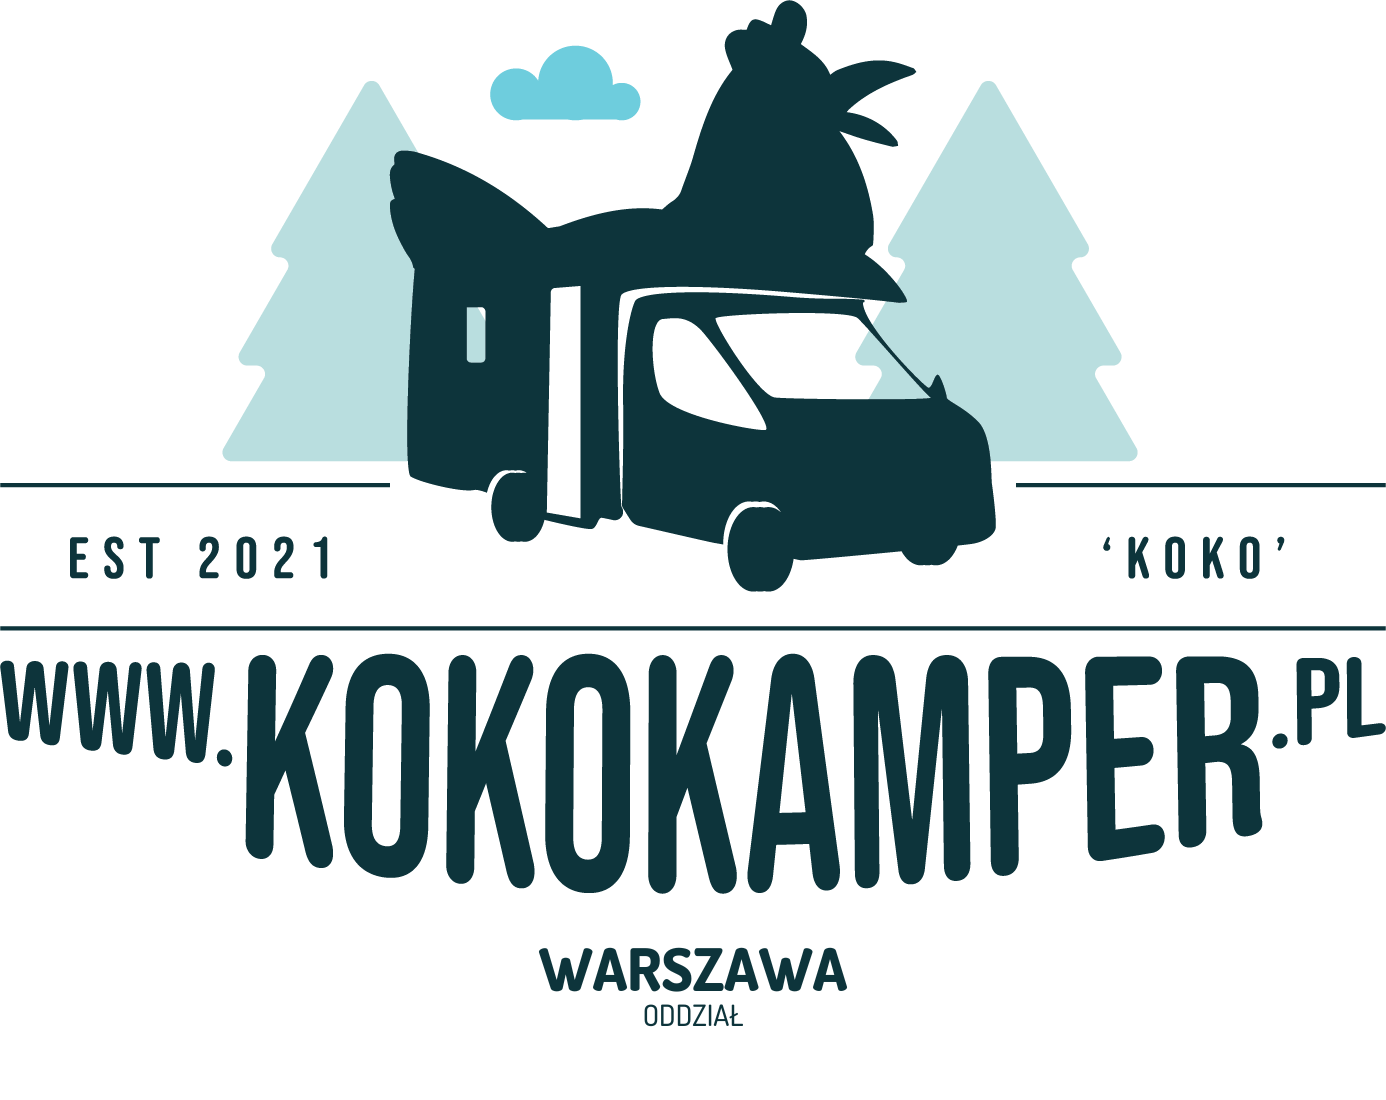  KoKo Kamper Warszawa – serwis